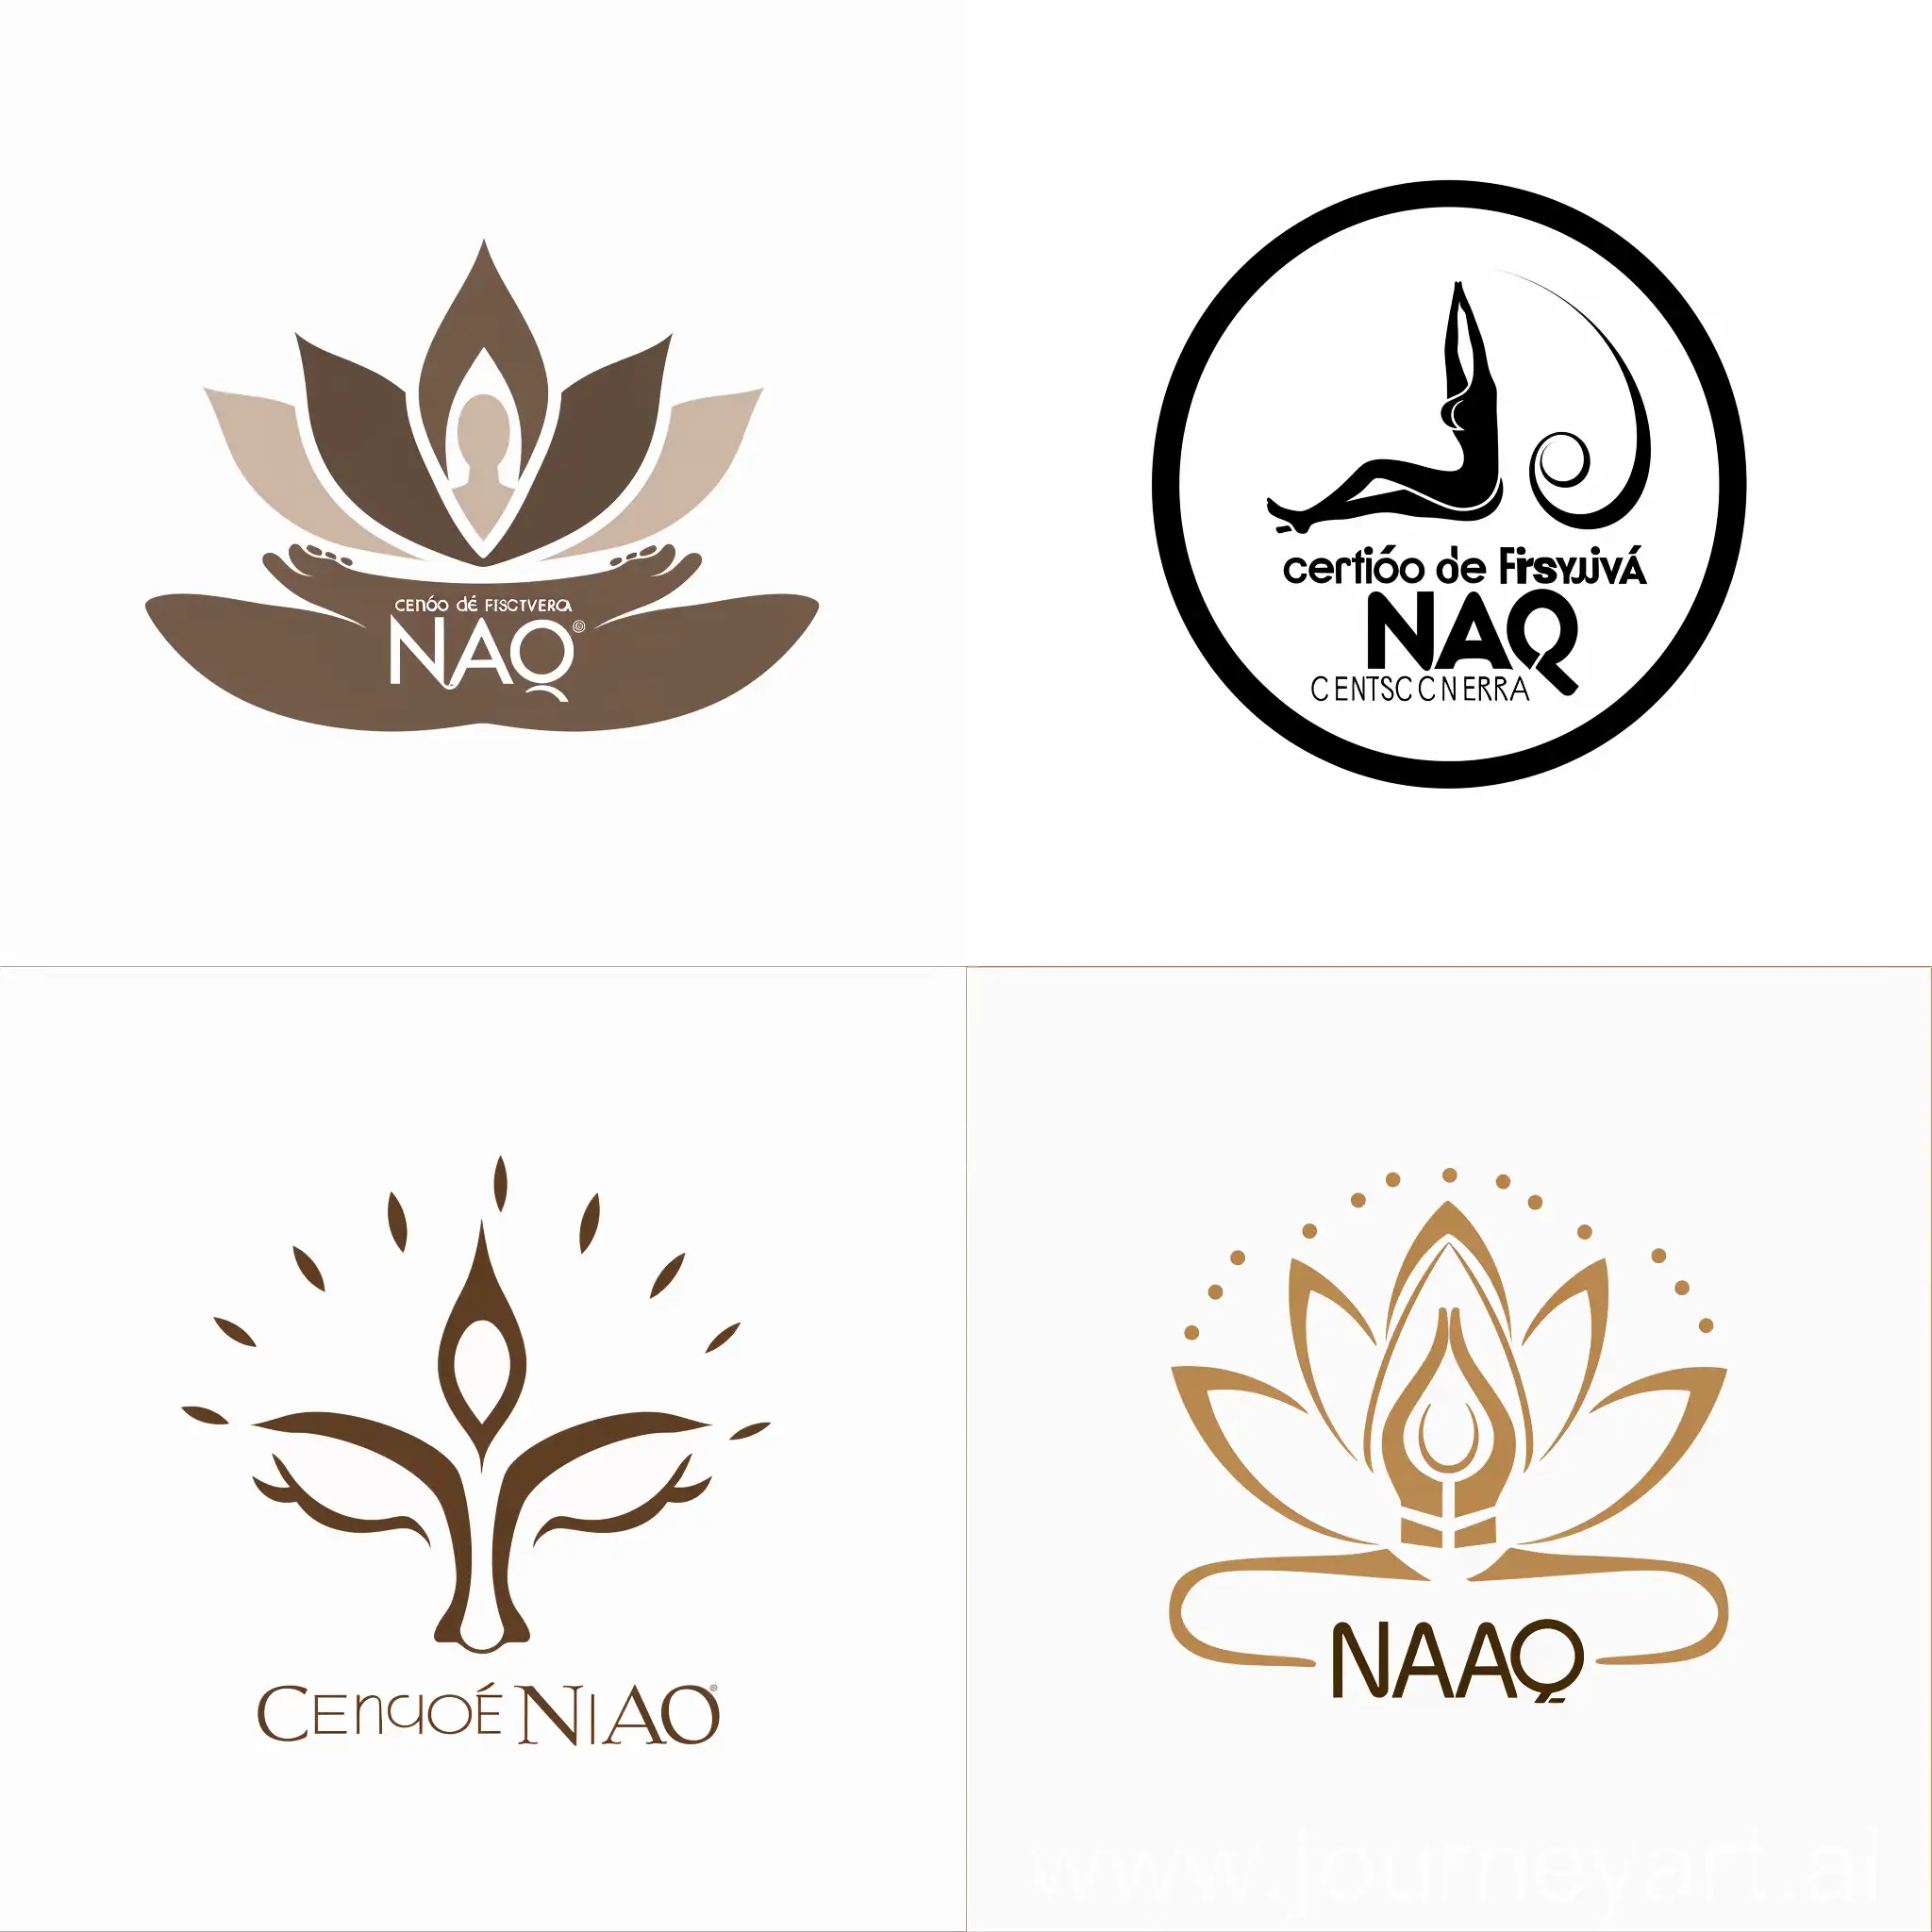 Quiero un logo para un centro de masajes que tiene de nombre Centro de Fisioterapia NAO